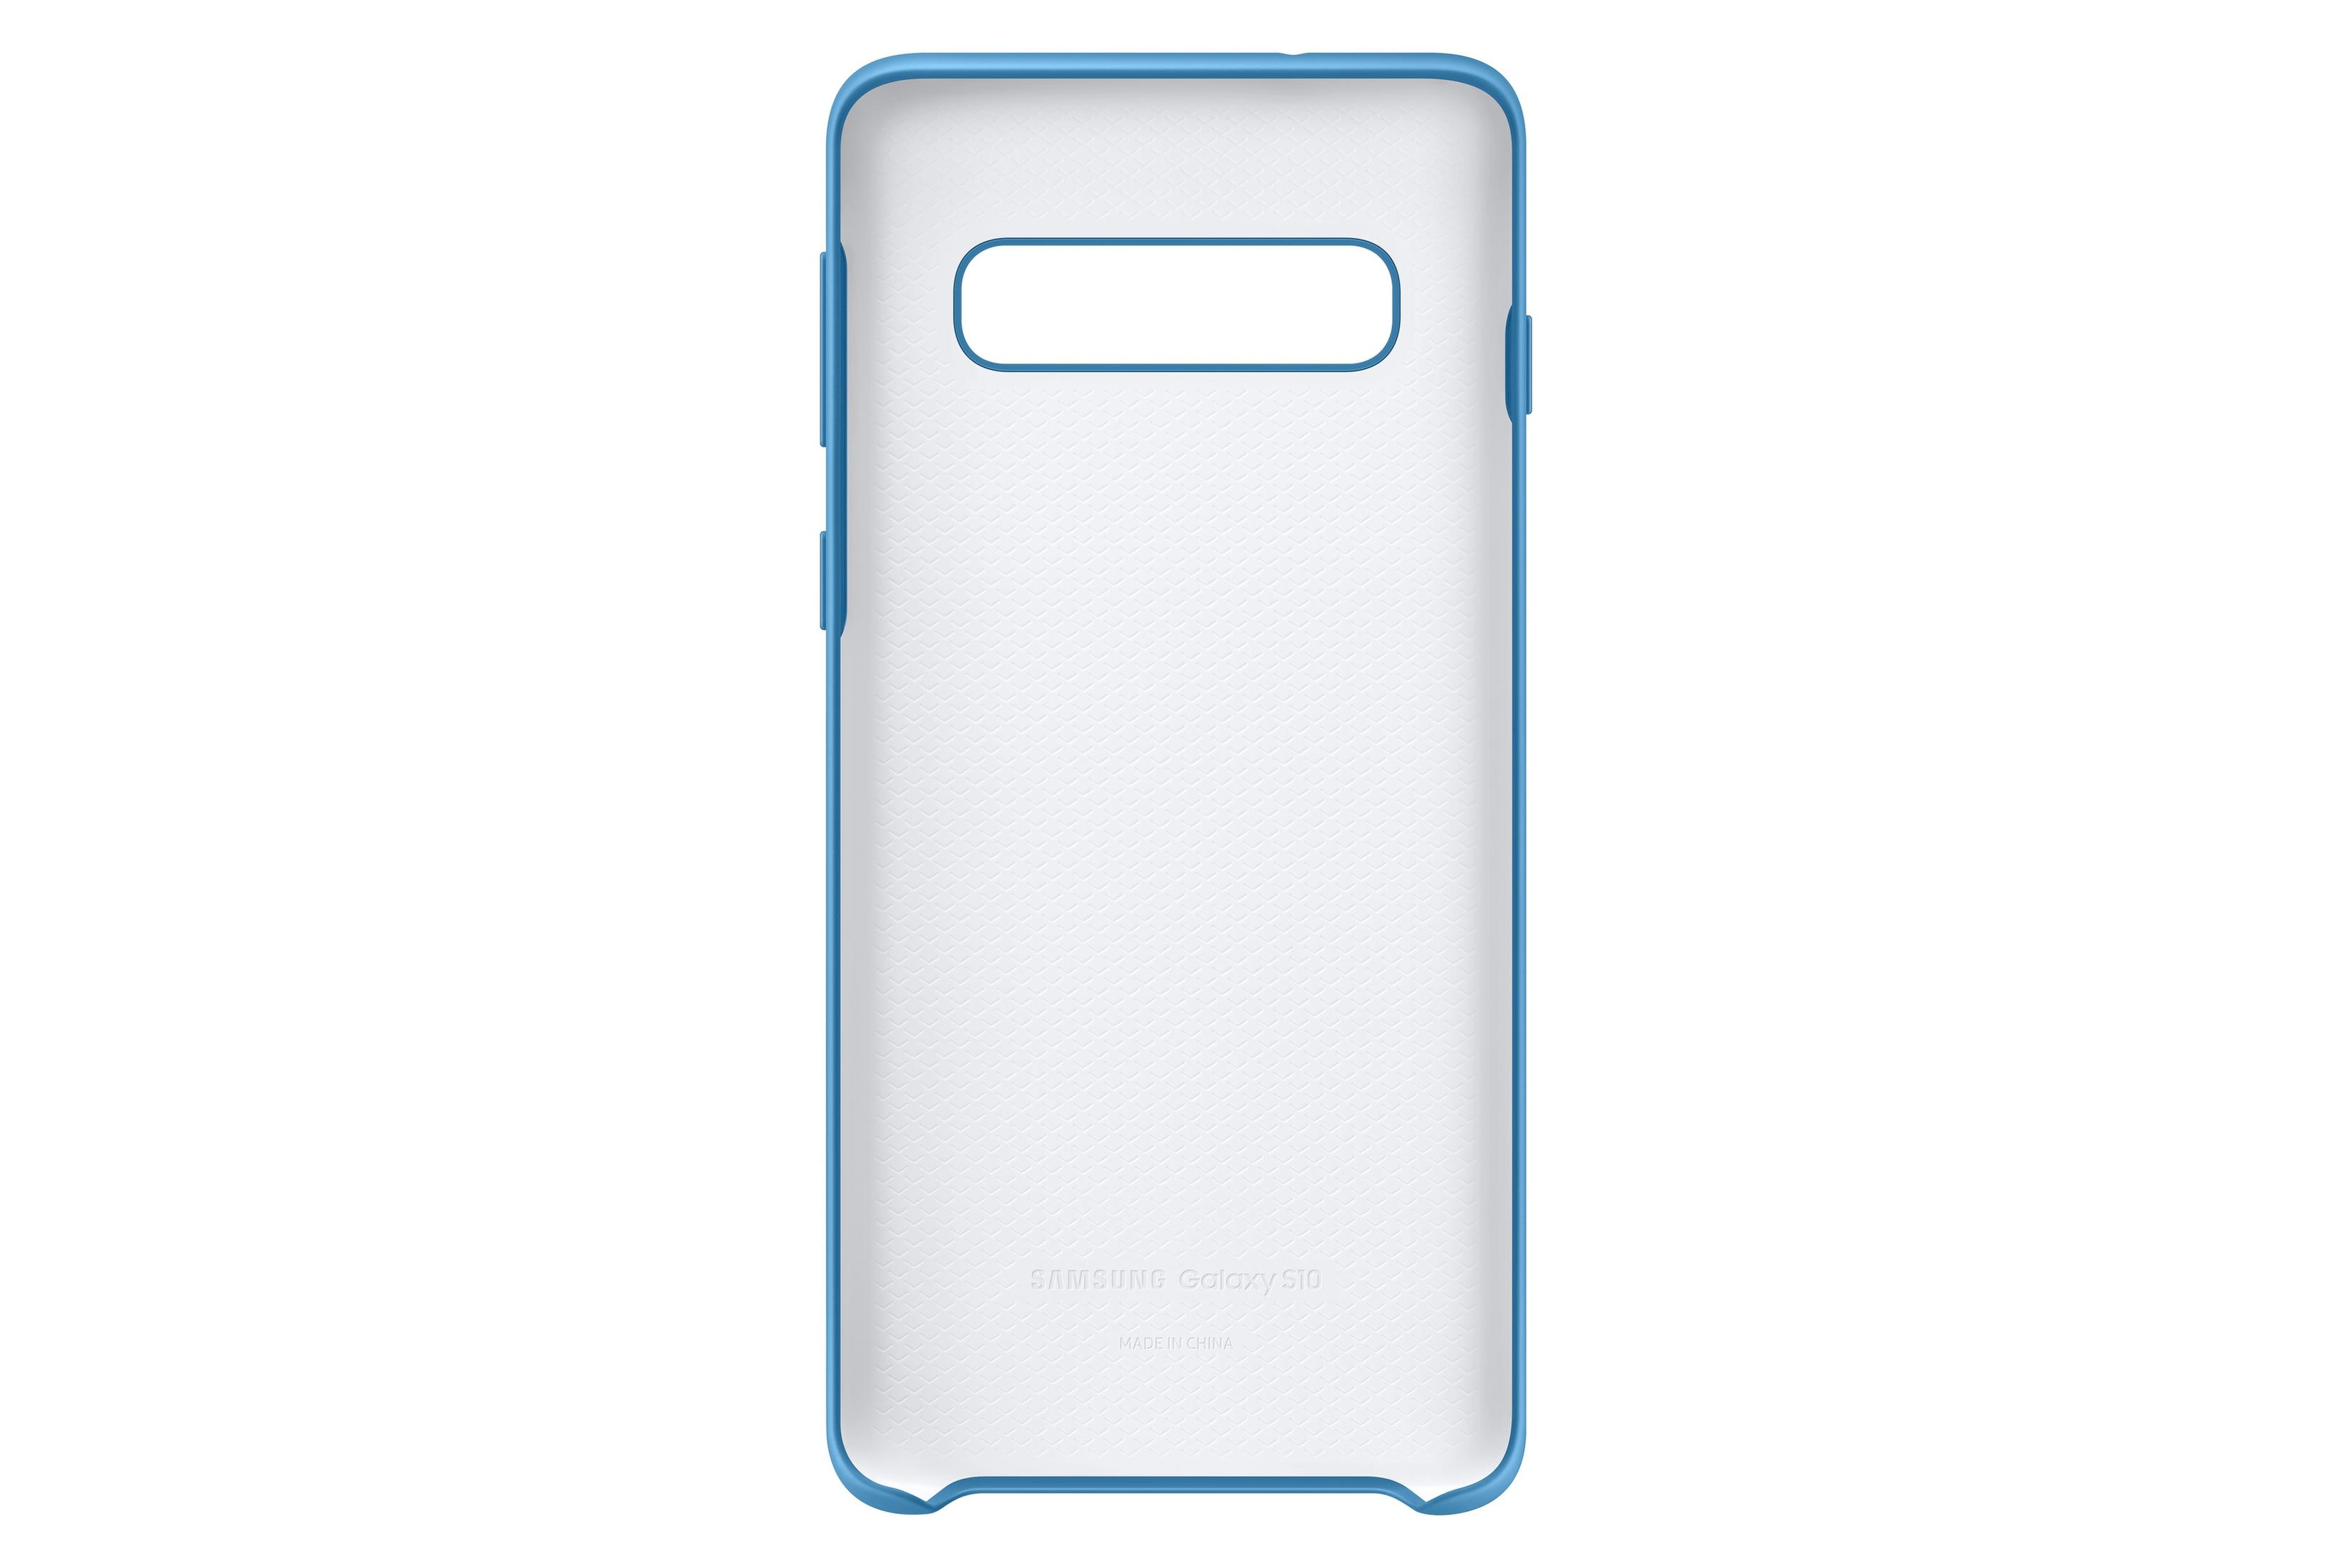 Blau S10 S10, Backcover, SILICONE COVER BLUE, Galaxy EF-PG973TLEGWW SAMSUNG Samsung,